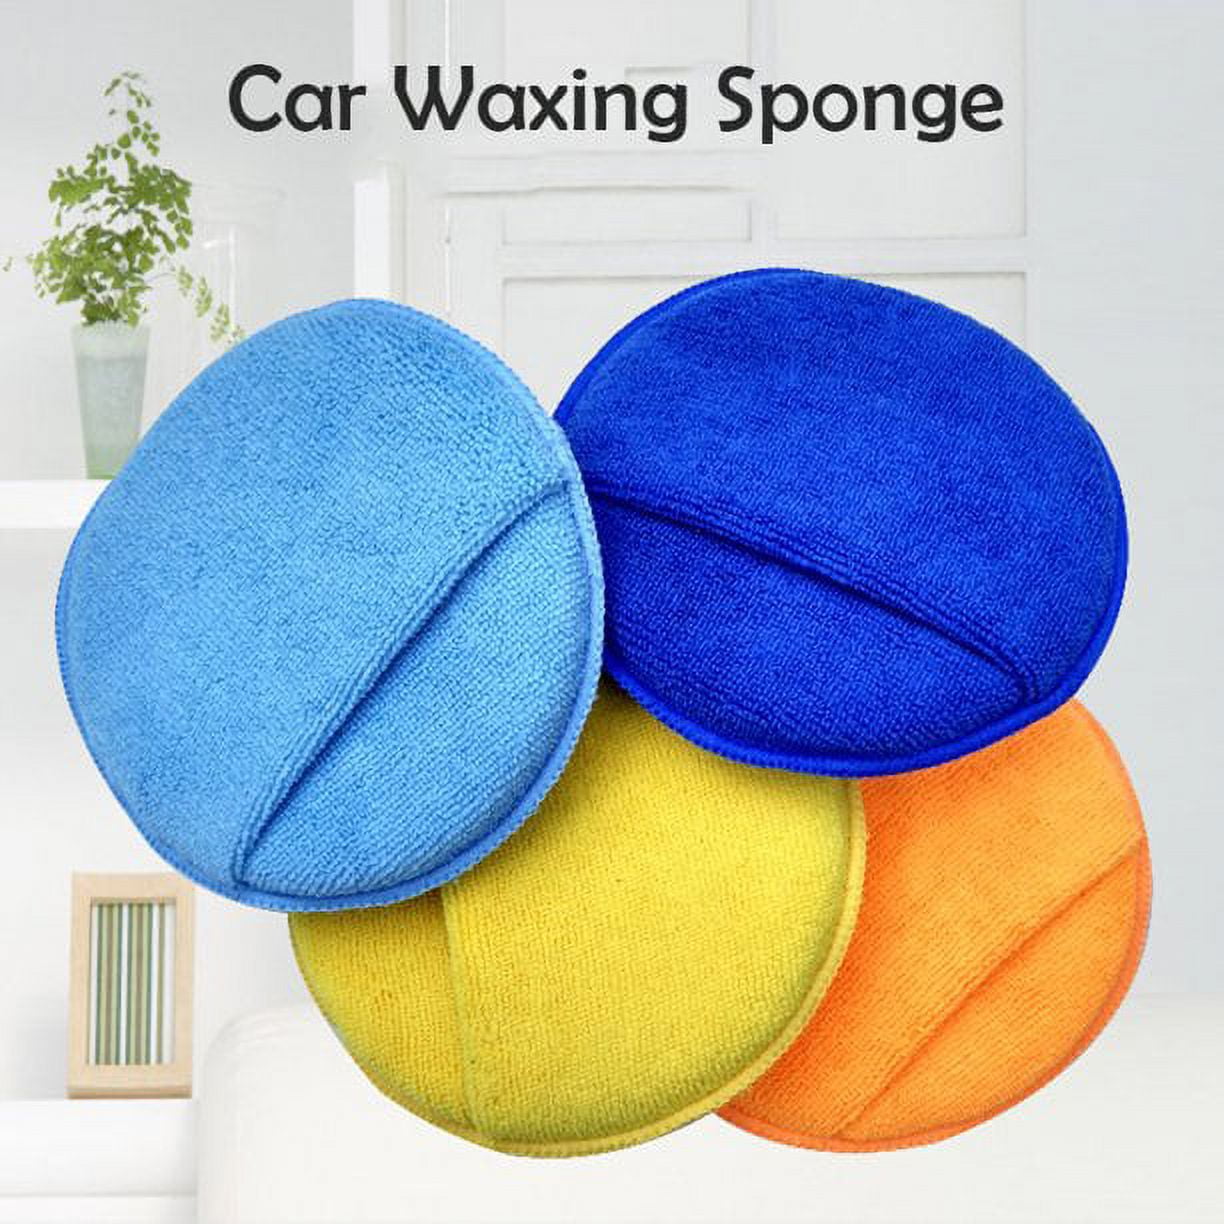 Car Detailing Sponge Wax Applicator Pads Shine Polishing for Waxing Paint  Glass